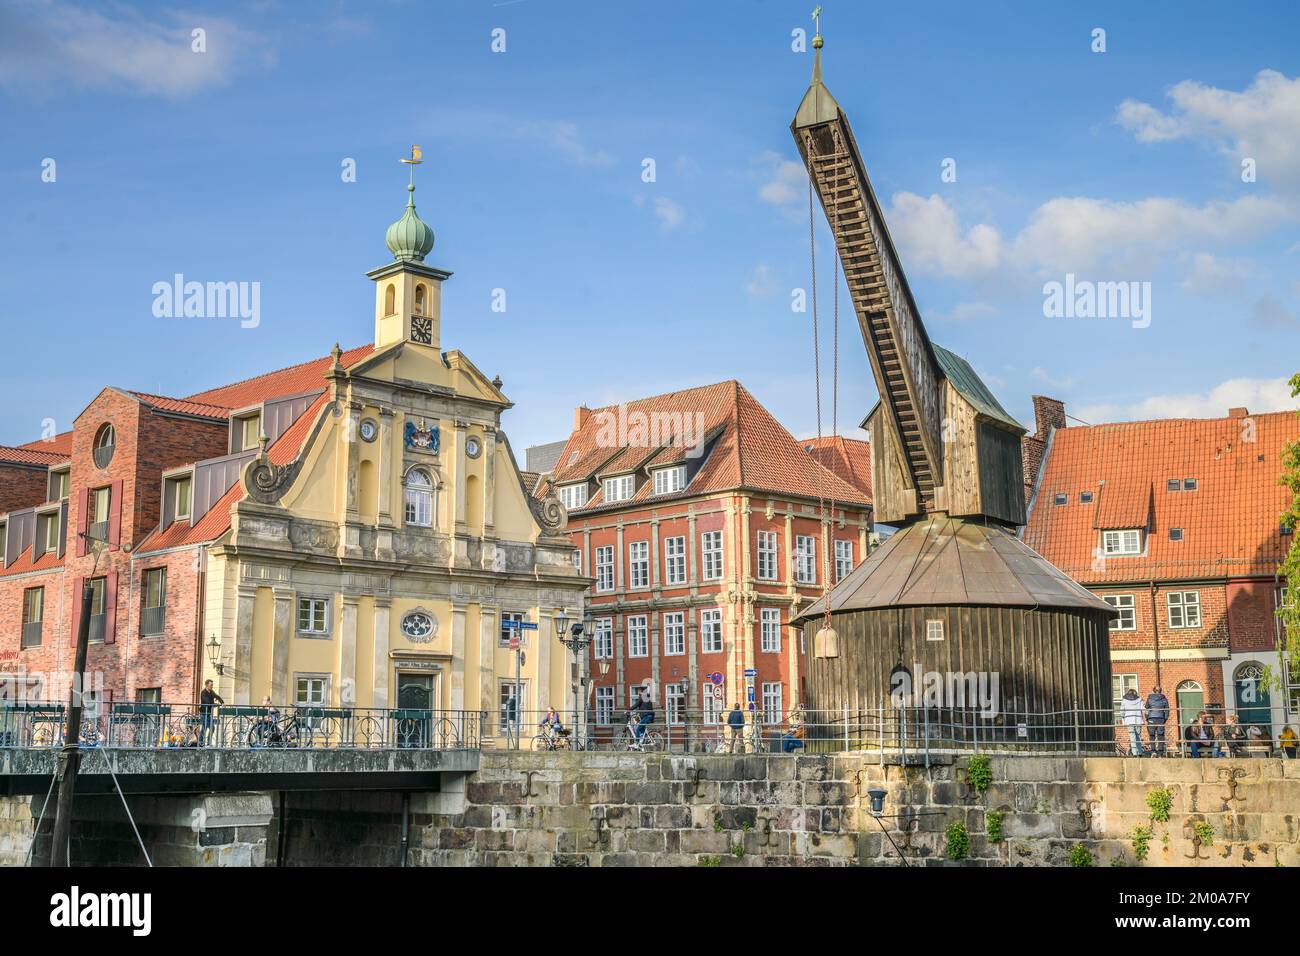 Alter Kran, Am Fischmarkt, Alter Hafen, Altstadt, Lüneburg, Niedersachsen, Deutschland Stock Photo